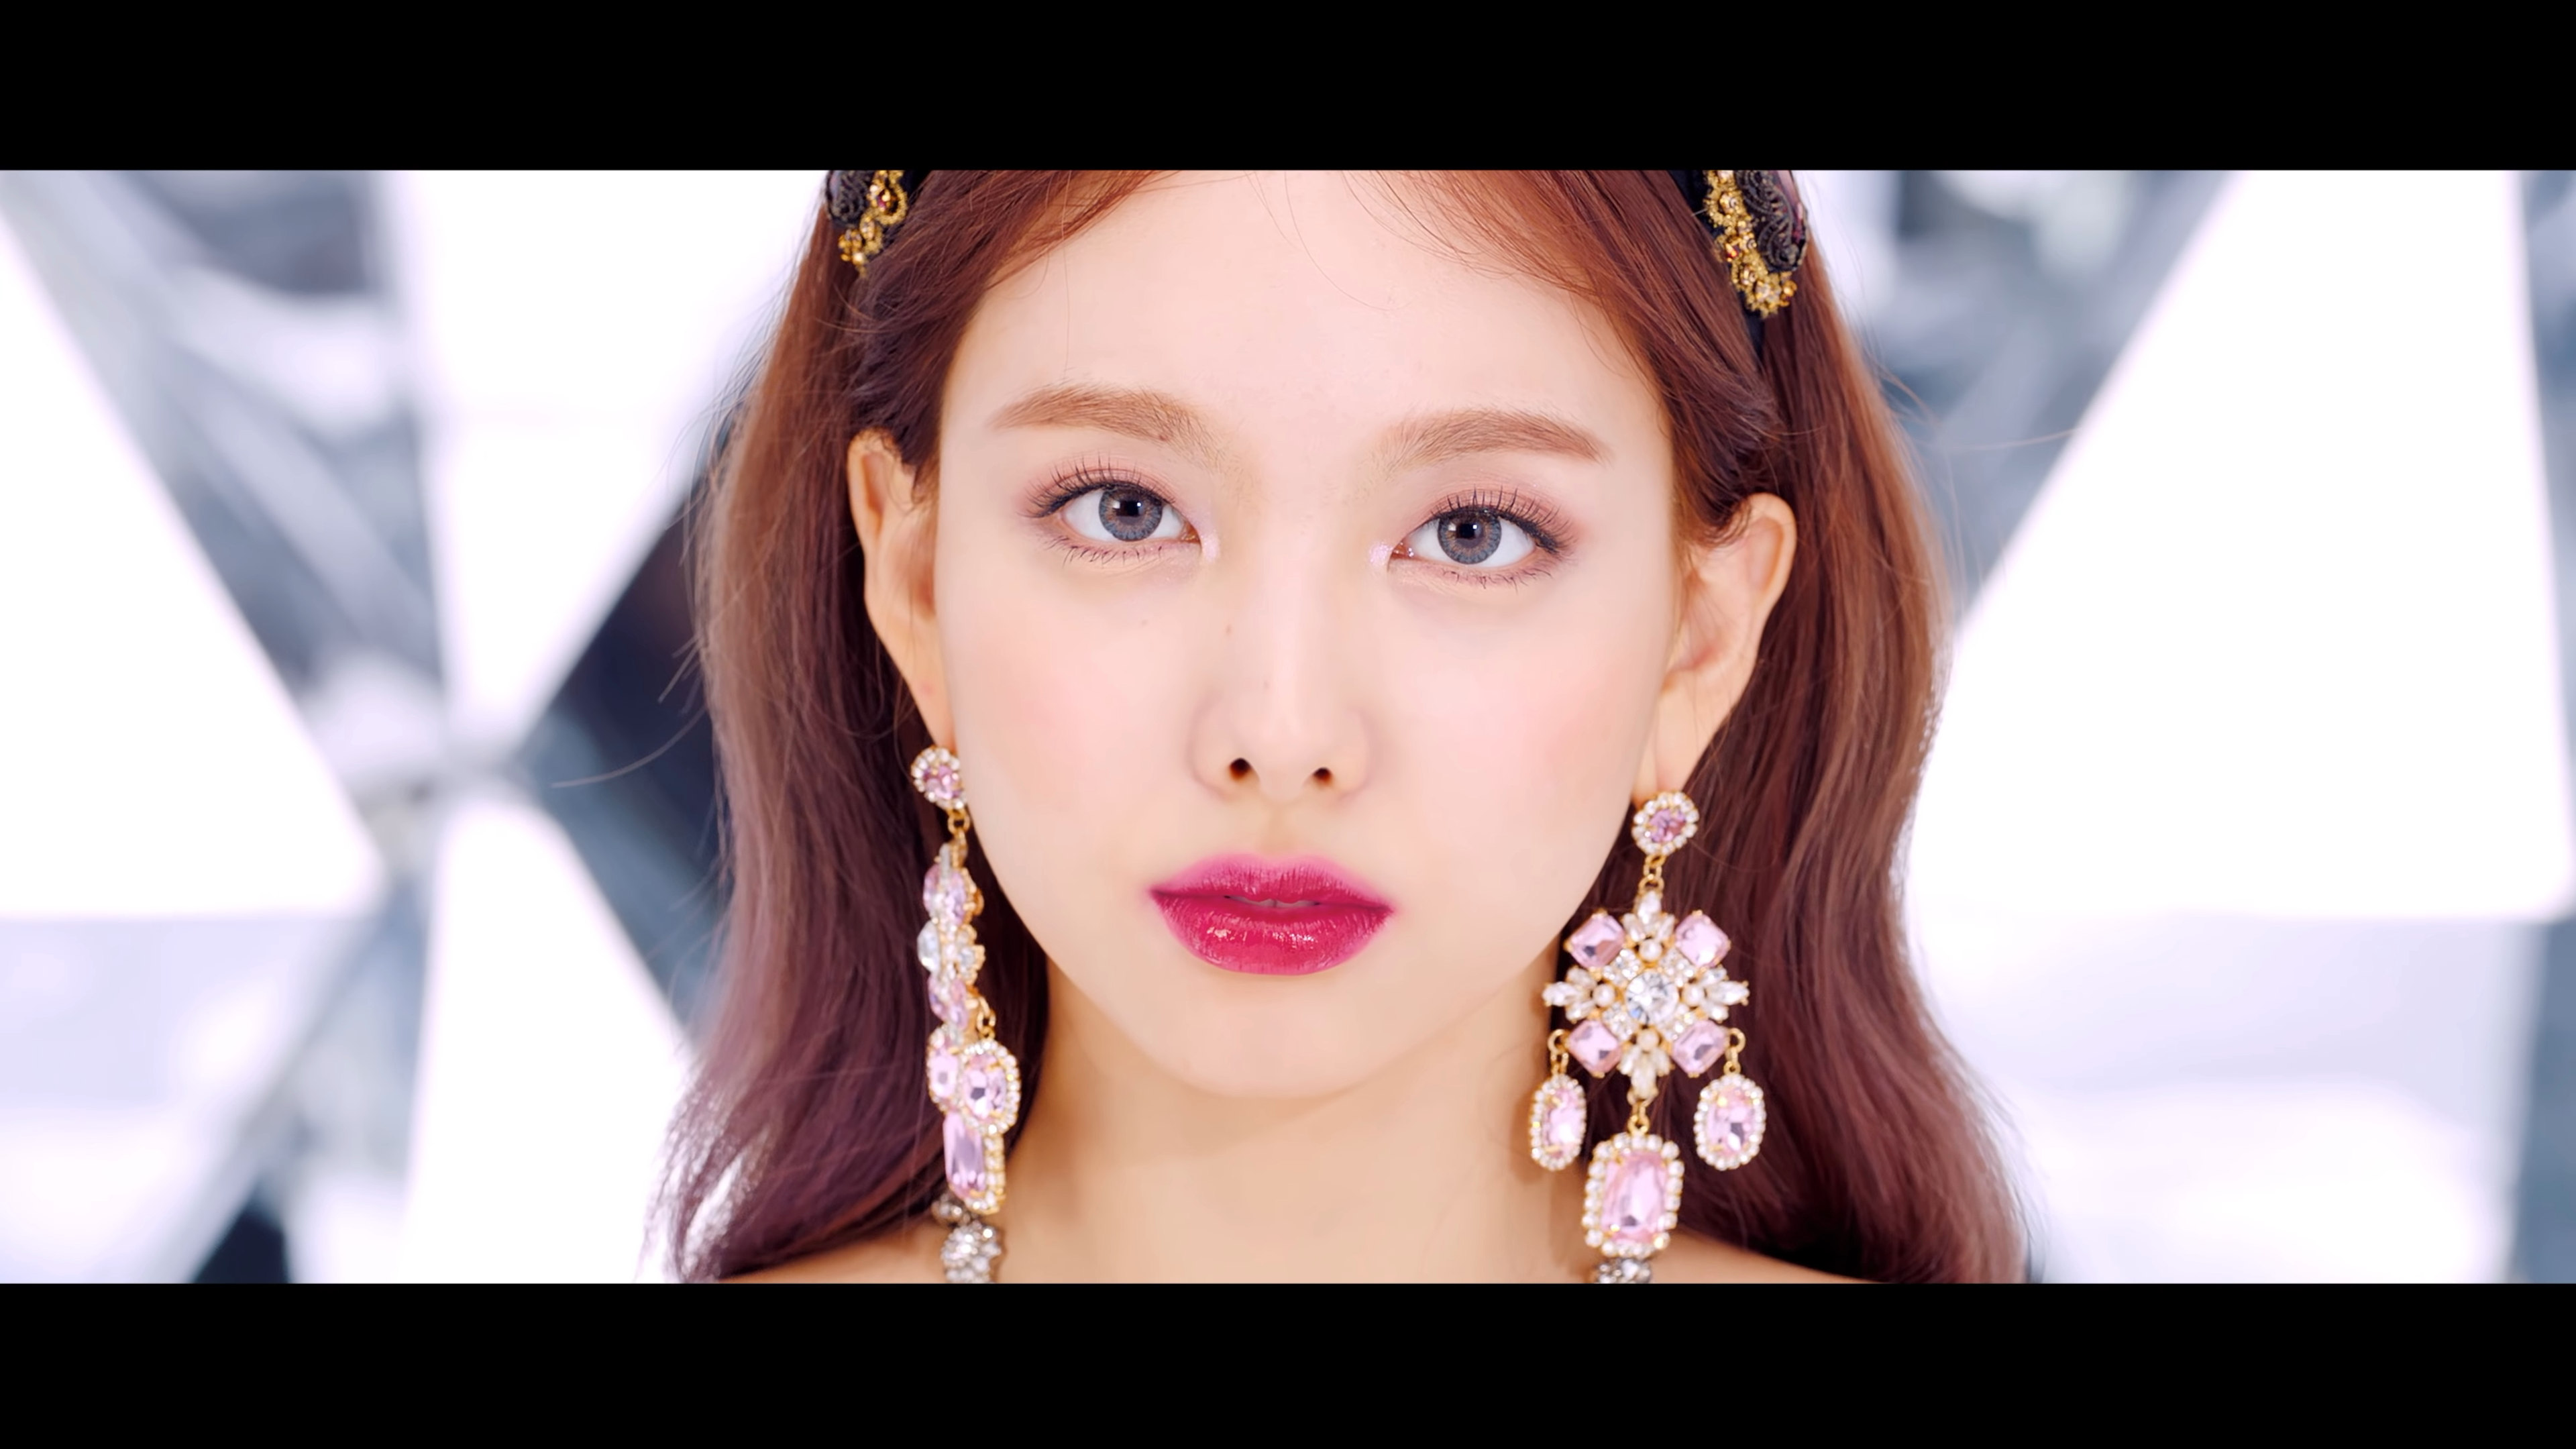 TWICE NAYEON POP! MV Screencaps (4K) - K-Pop Database /